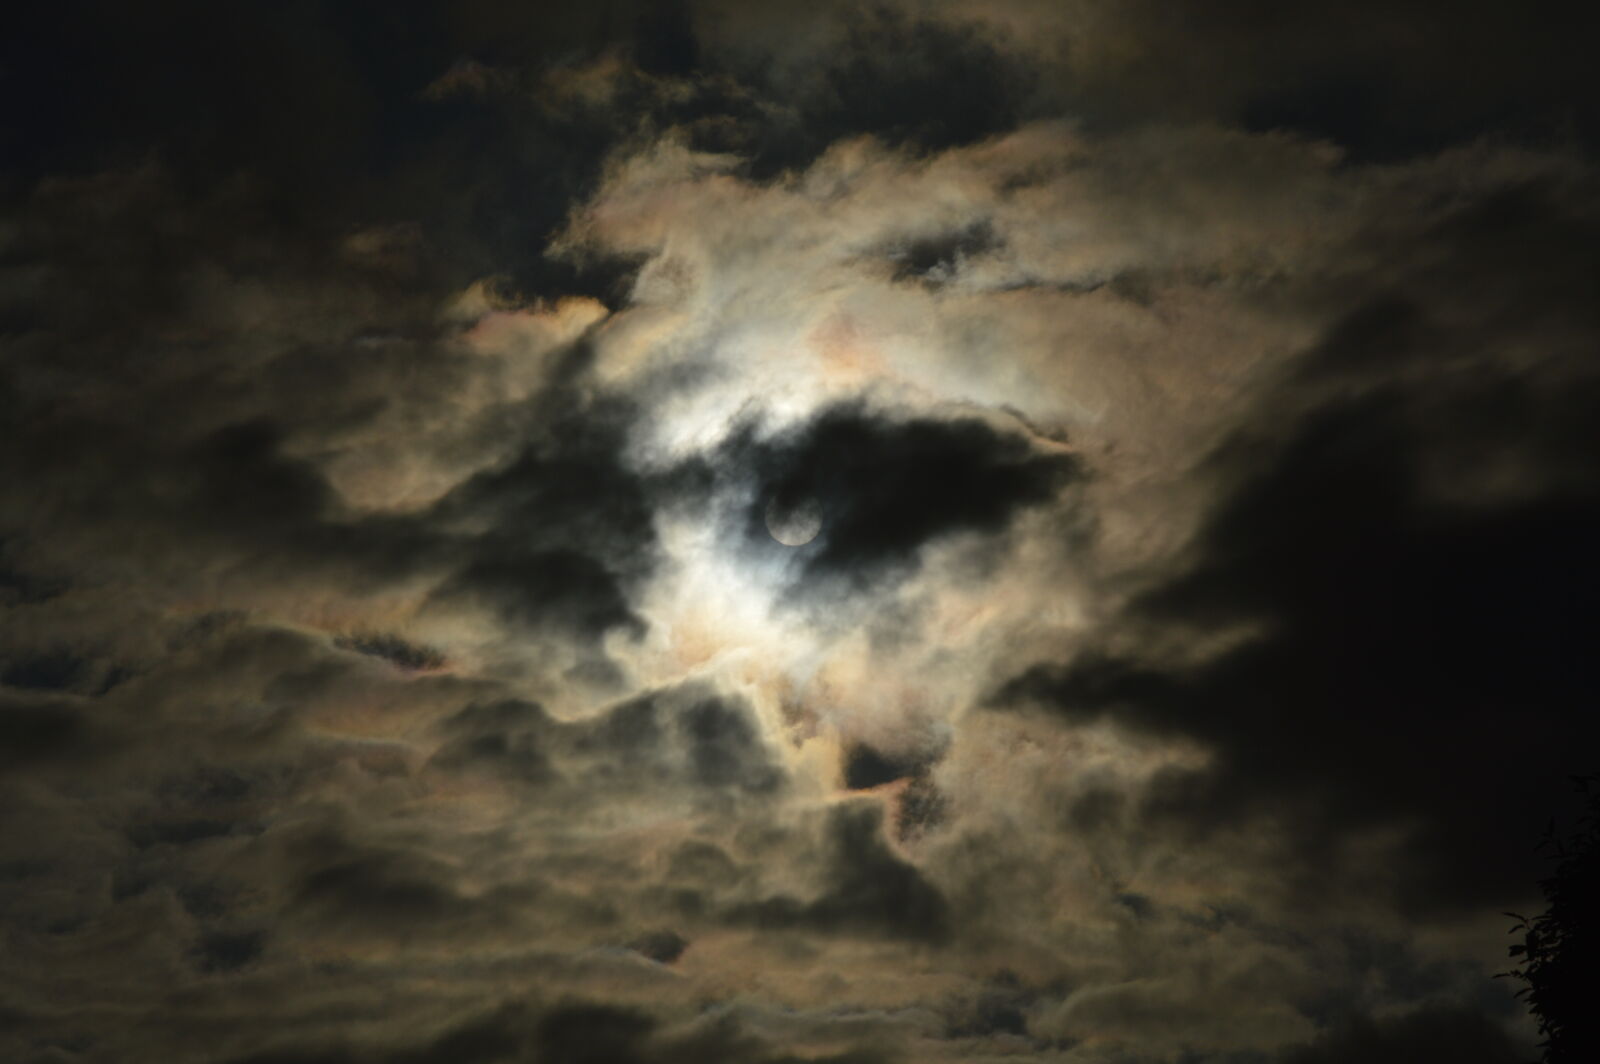 Nikon D3200 sample photo. Cloud, darkness, evening, sun photography